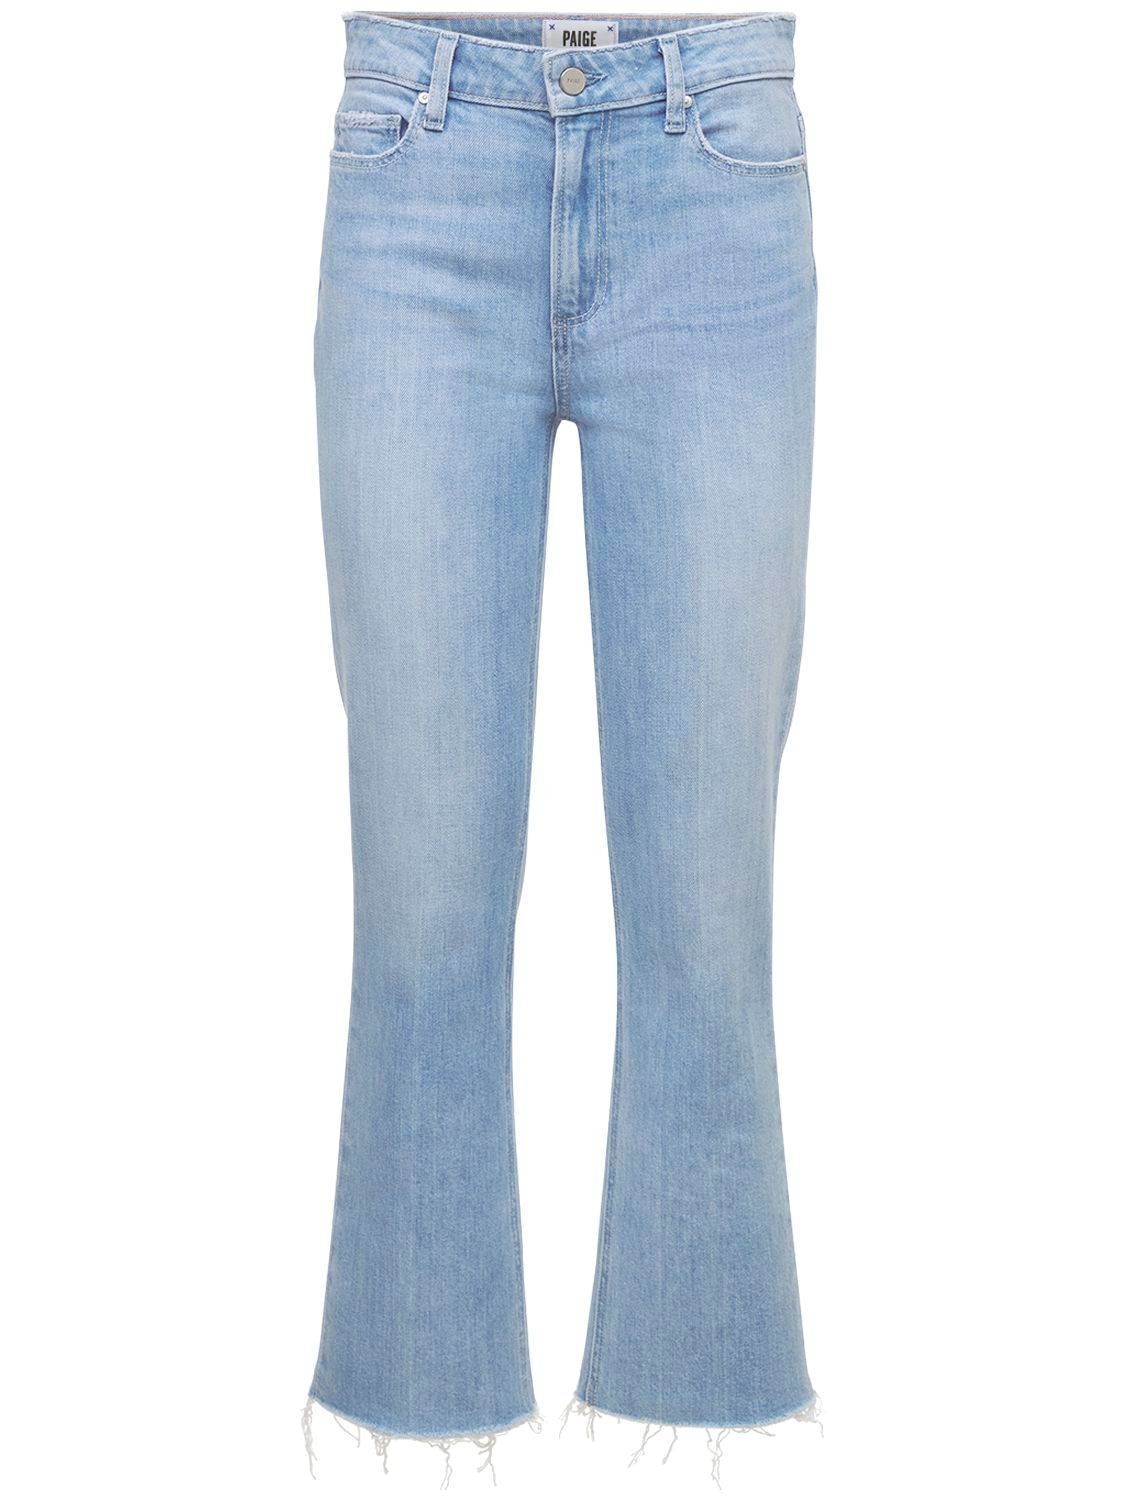 Vintage Colette Cropped Denim Jeans